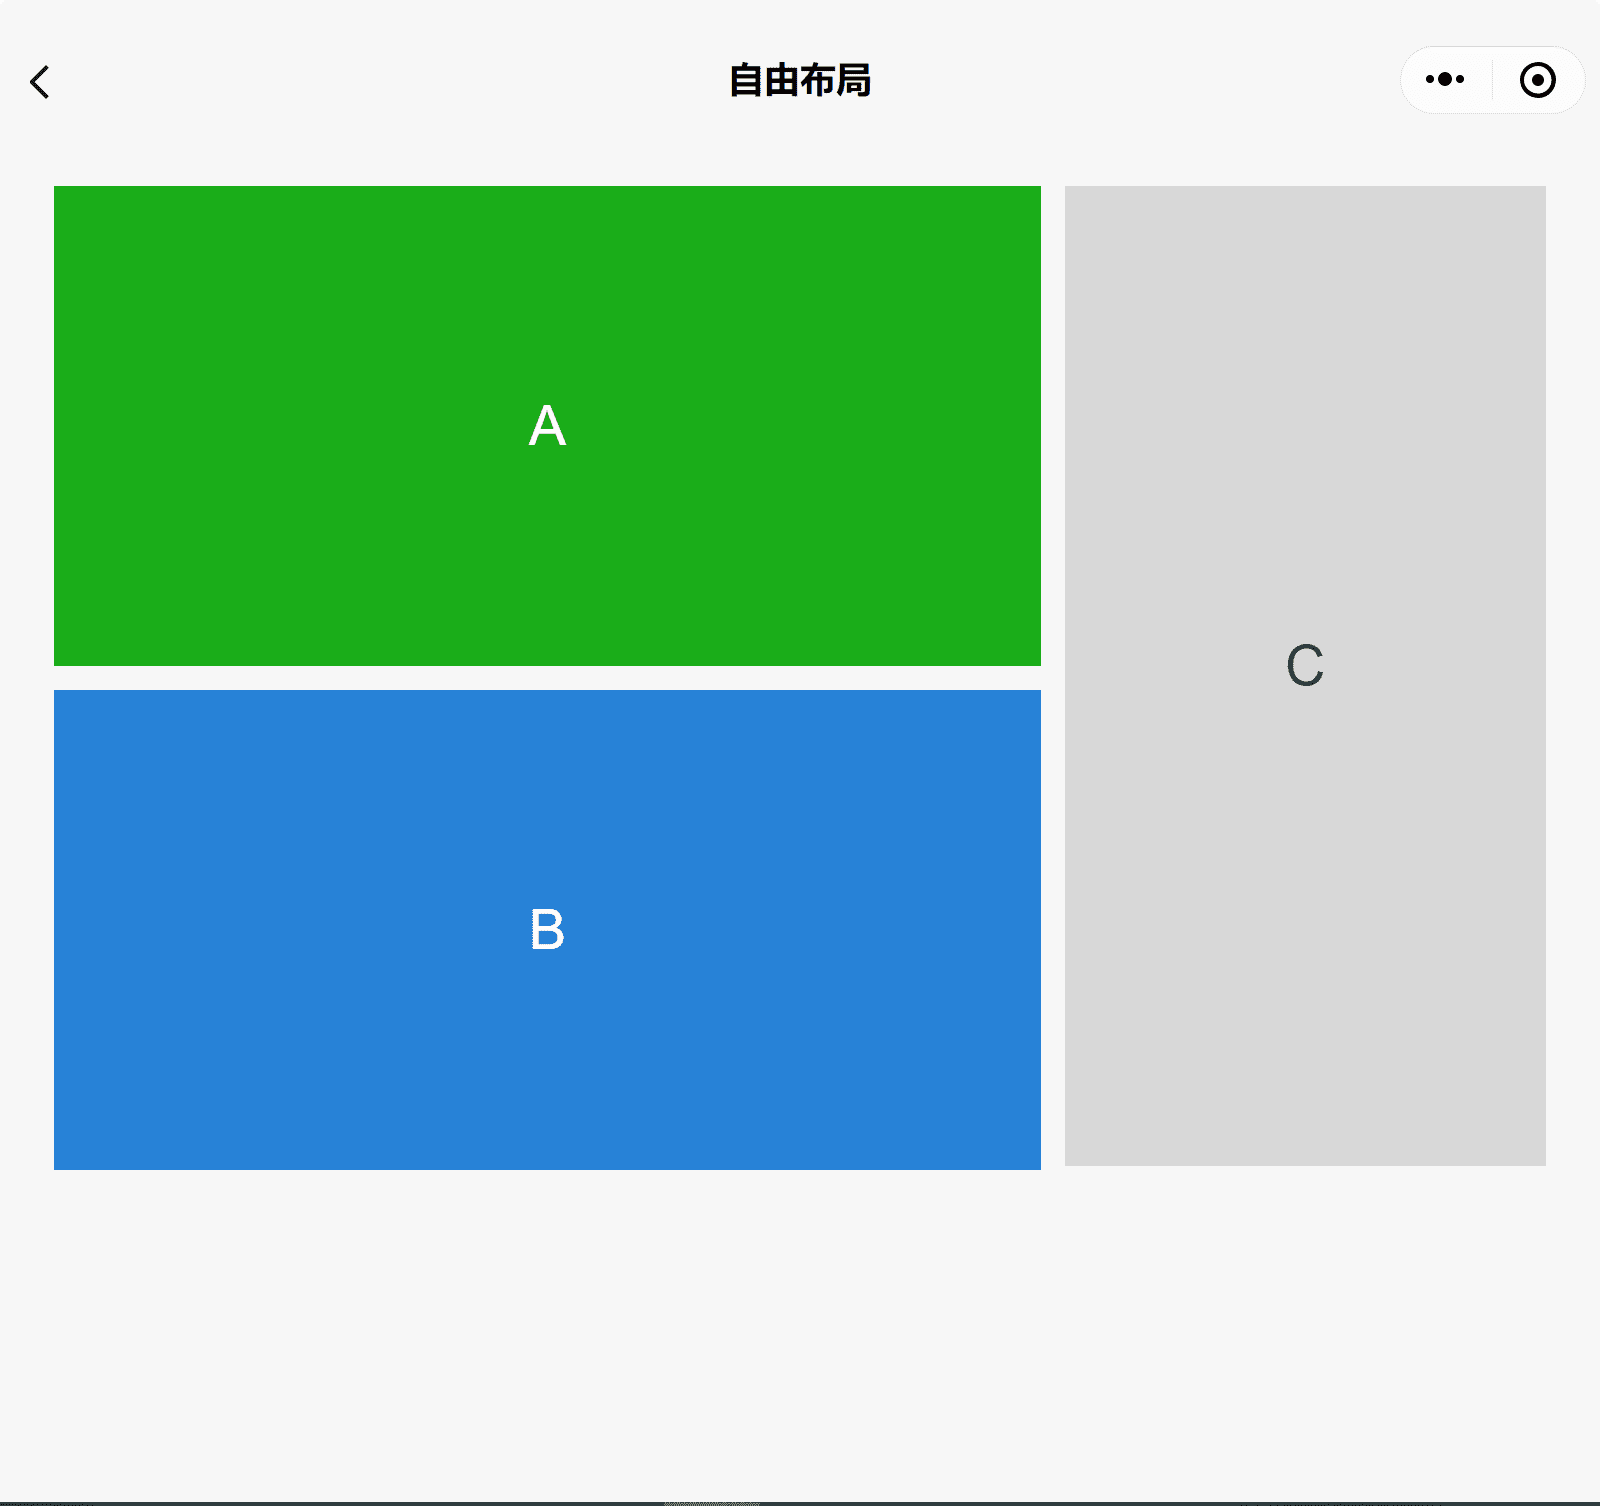 एक चौड़ी विंडो में WeChat के कॉम्पोनेंट का डेमो ऐप्लिकेशन दिख रहा है. इसमें तीन बॉक्स A, B, और C दिख रहे हैं. एक तरफ़ A और C एक तरफ़ है, जो कि एक तरफ़ है.